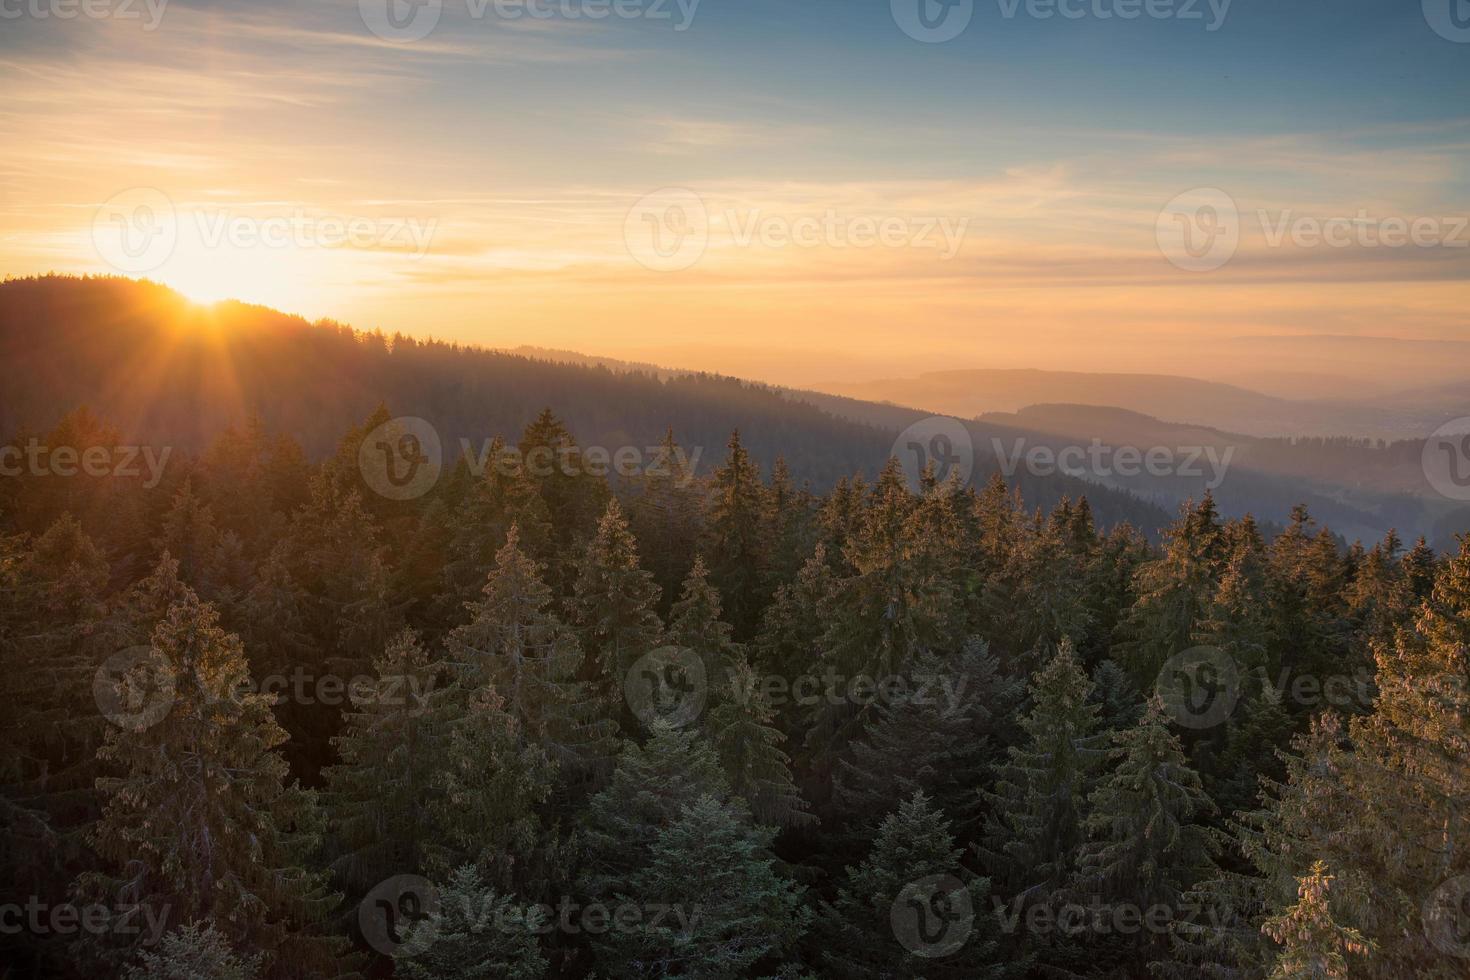 tramonto al di sopra di Svizzera con pino foresta foto